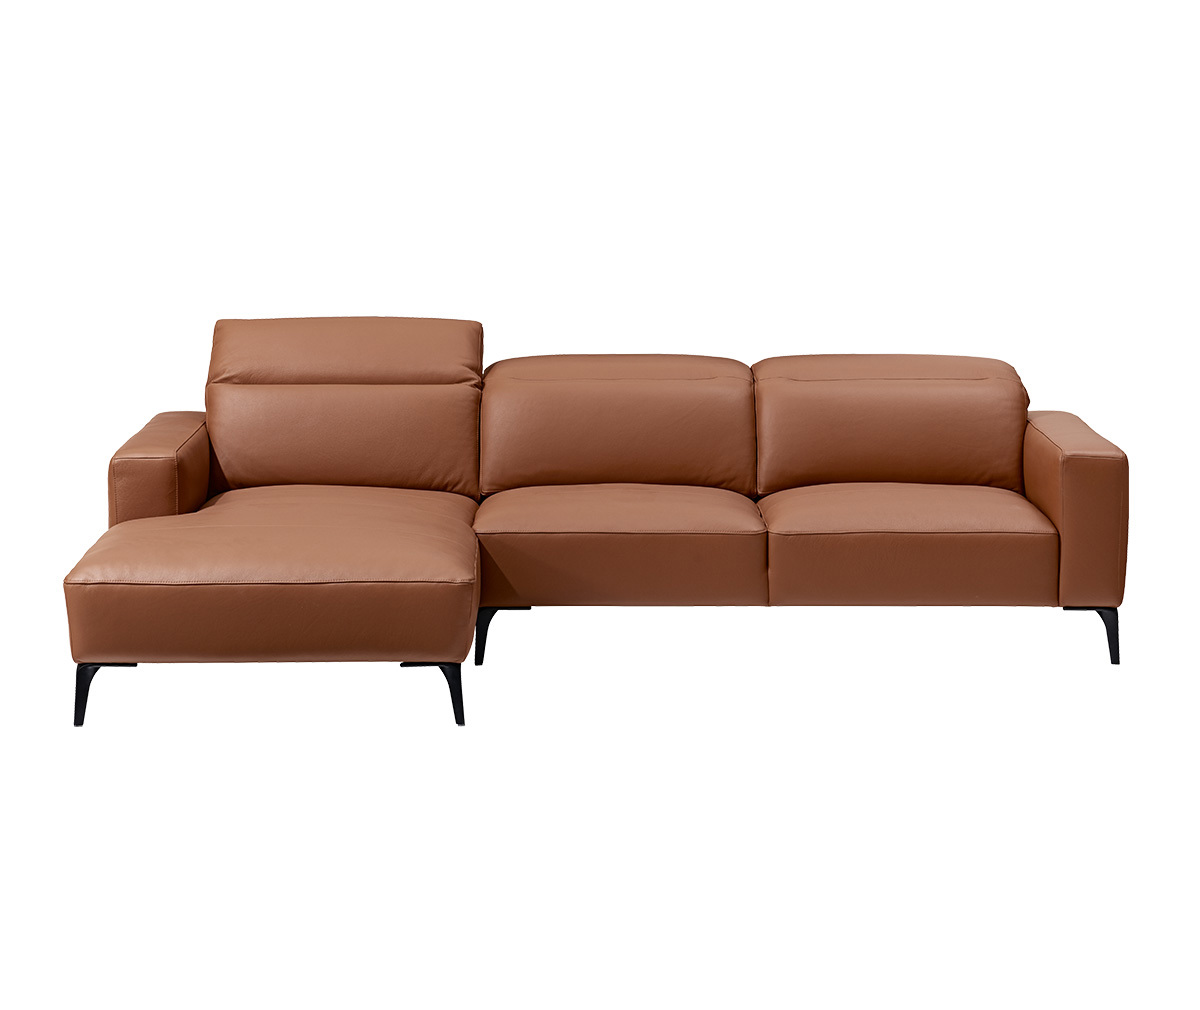 Zurich Chaise Sofa